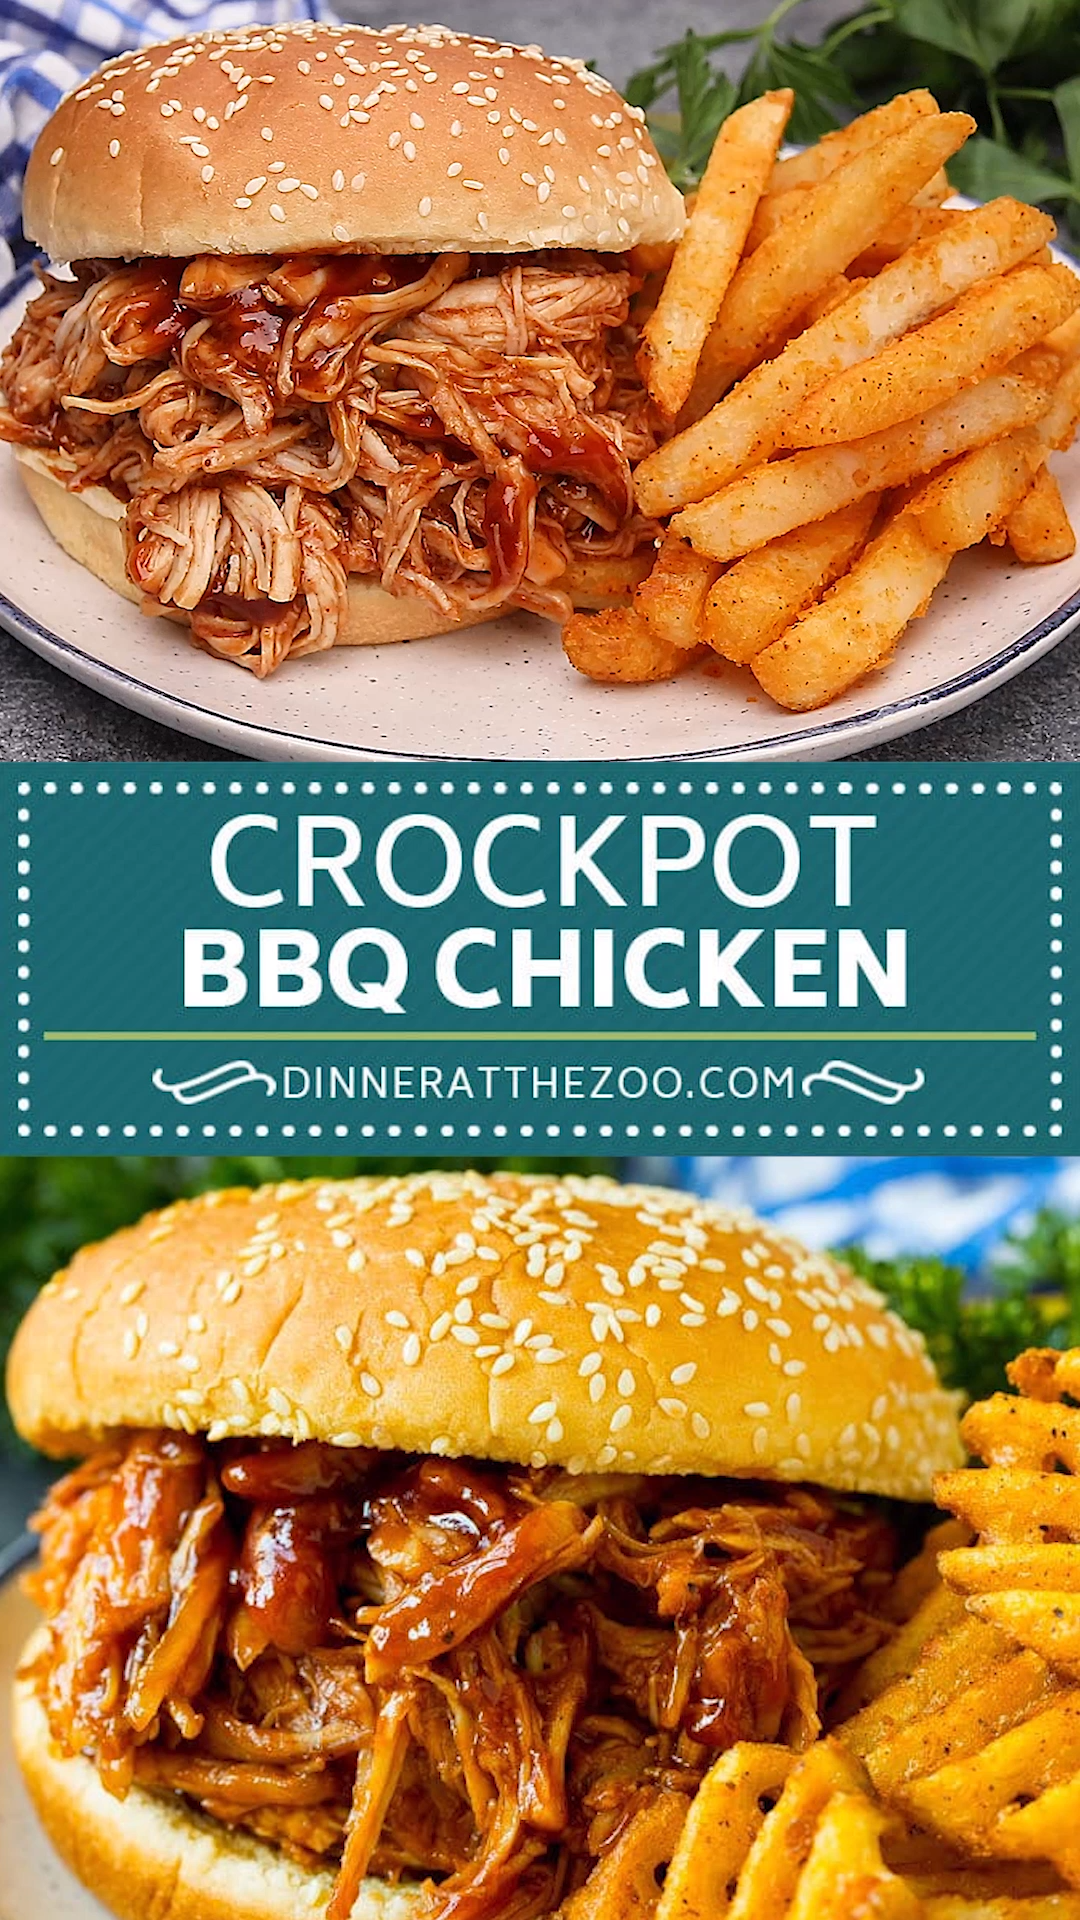 Crockpot BBQ Chicken -   19 dinner recipes easy crockpot ideas